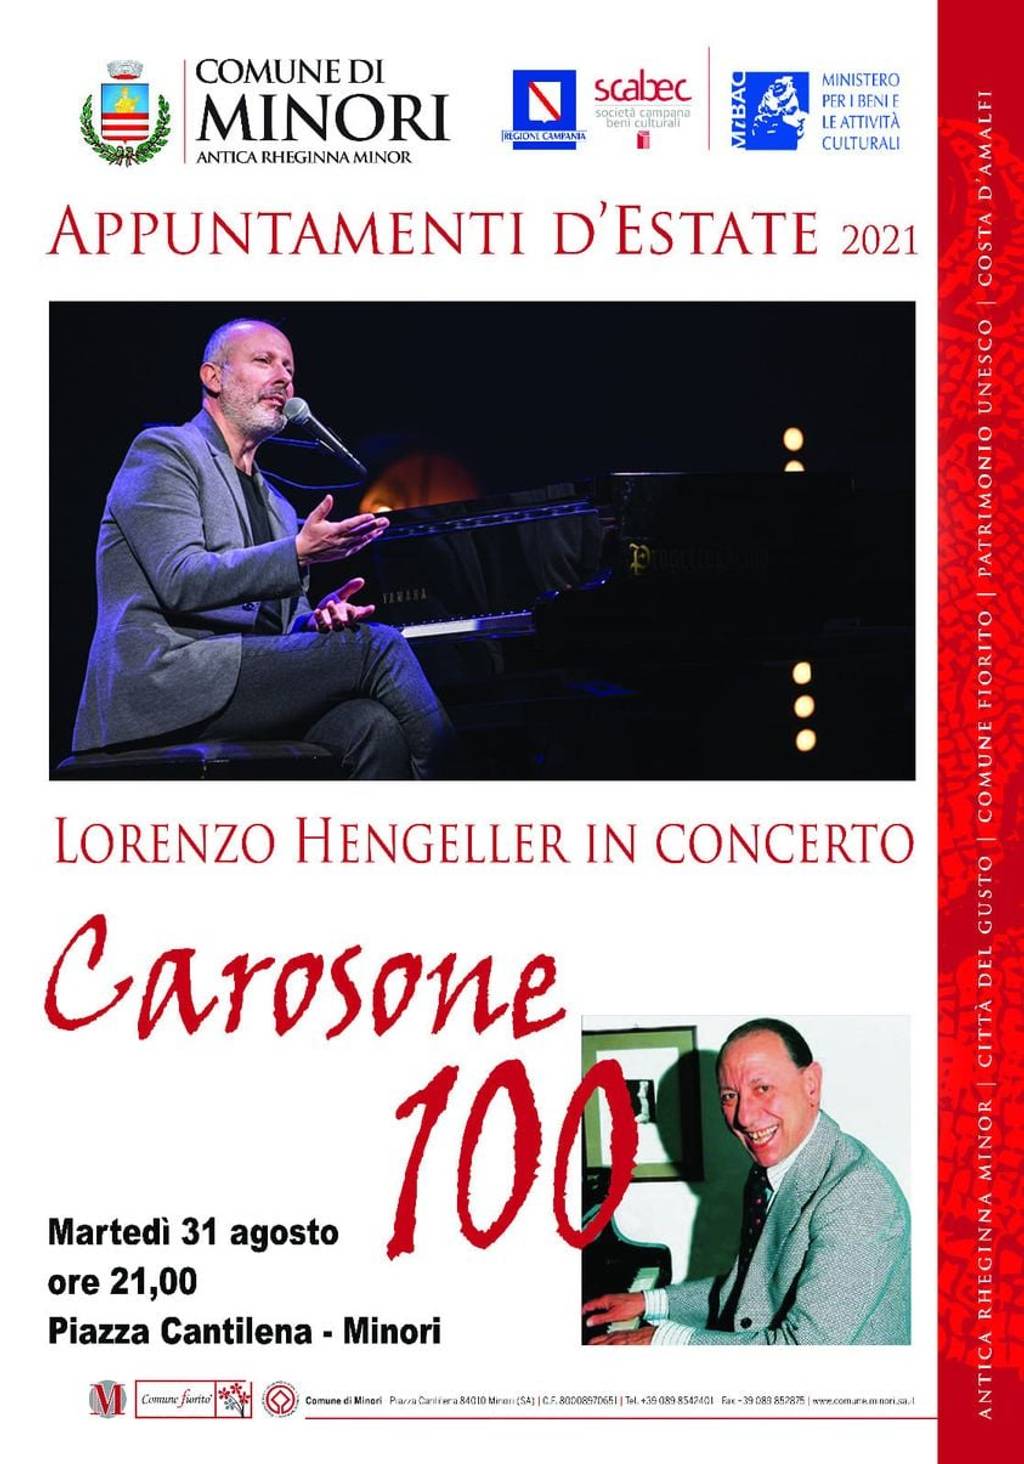 Concert of M° LORENZO HENGELLER